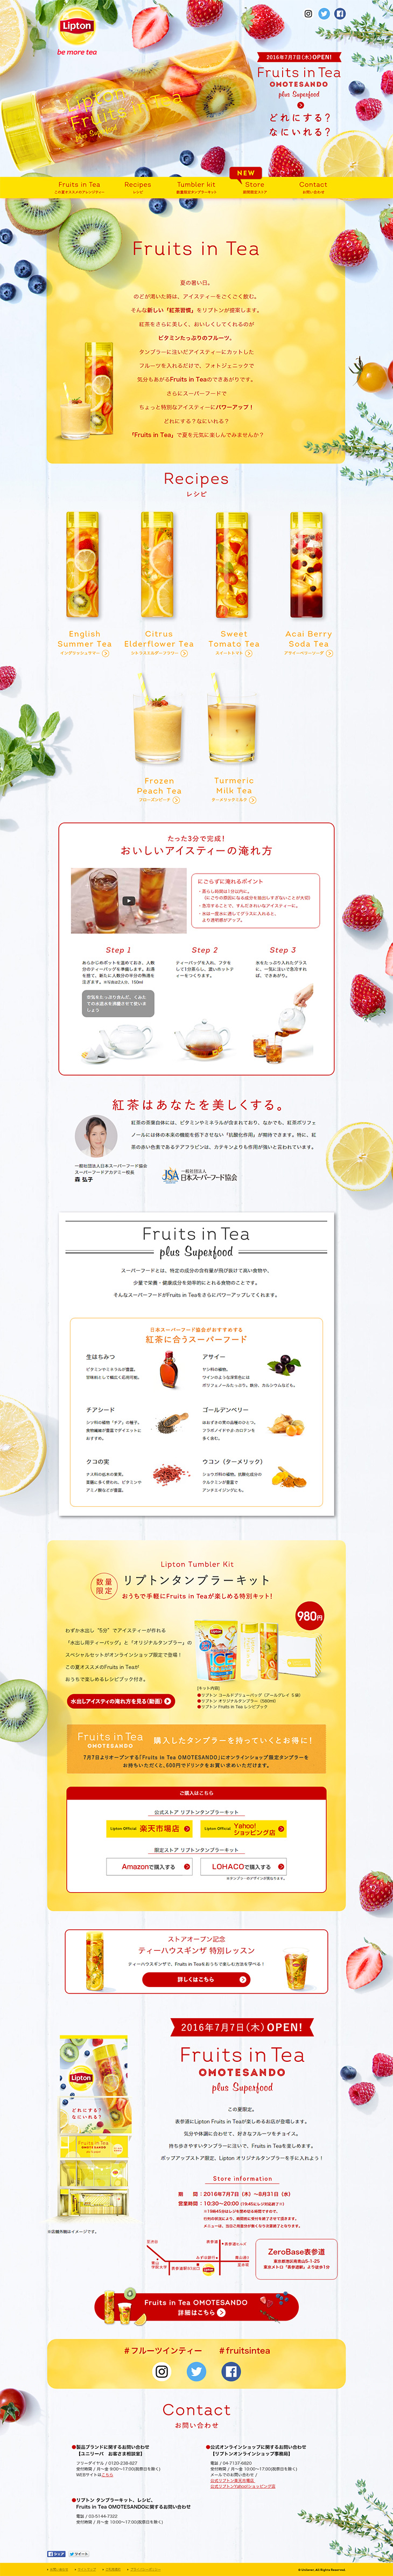 Lipton Fruits in Tea_pc_1